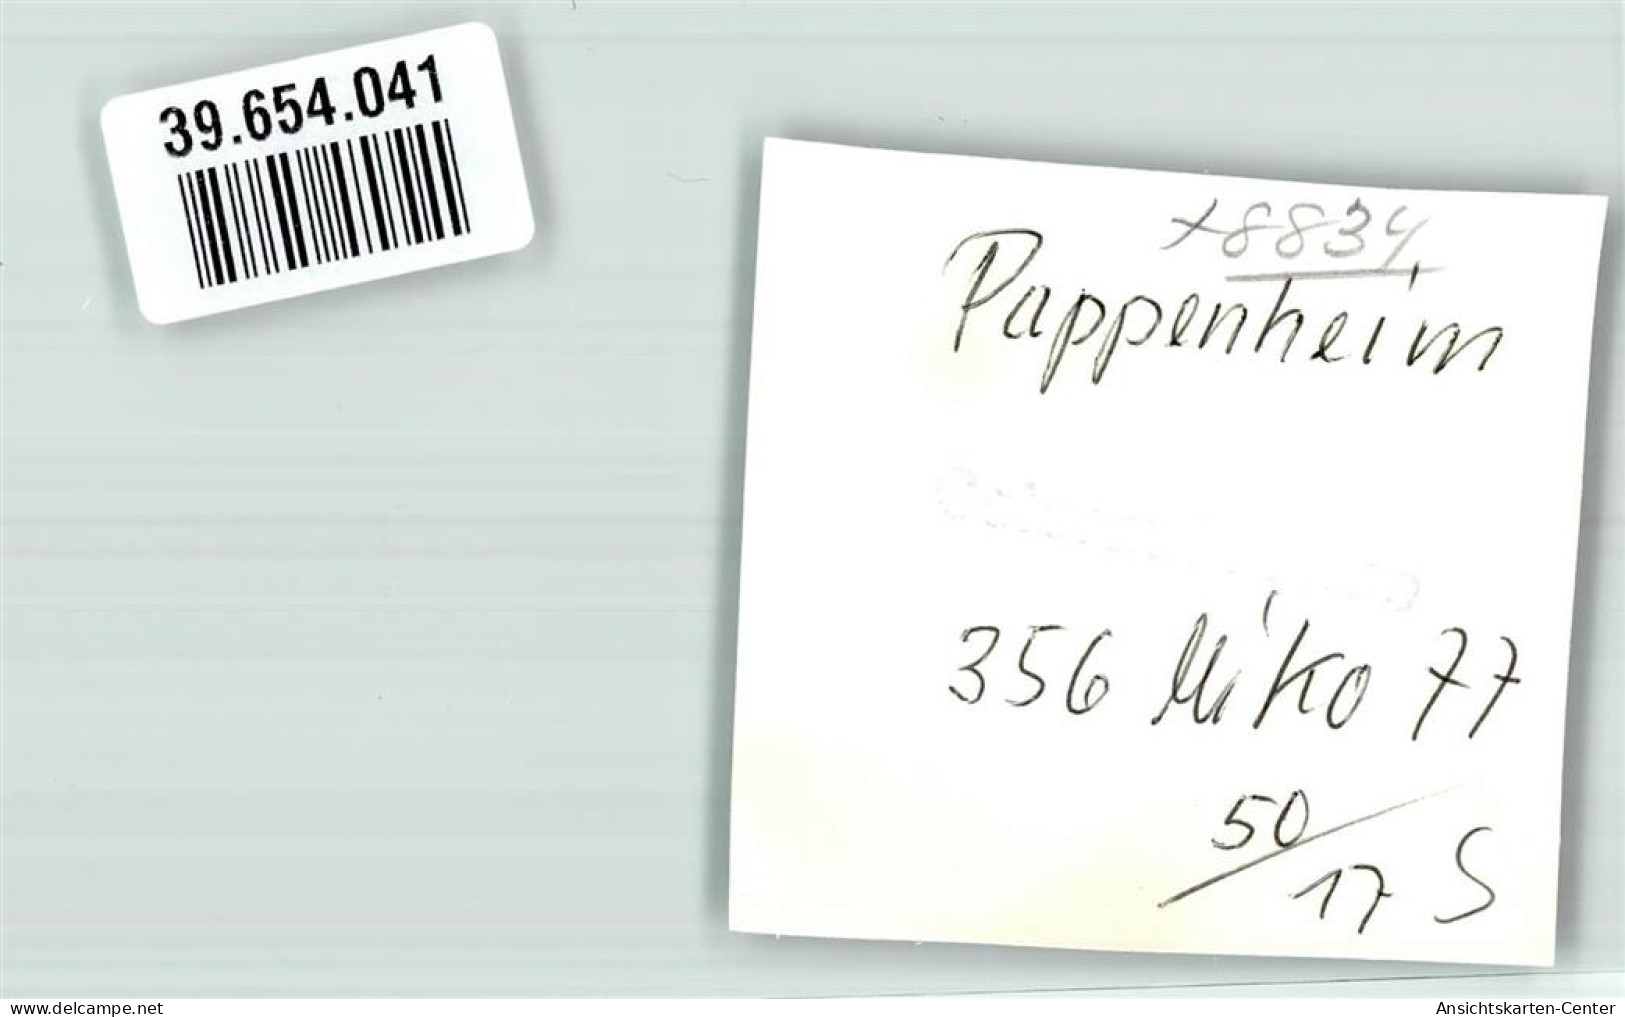 39654041 - Pappenheim , Mittelfr - Pappenheim